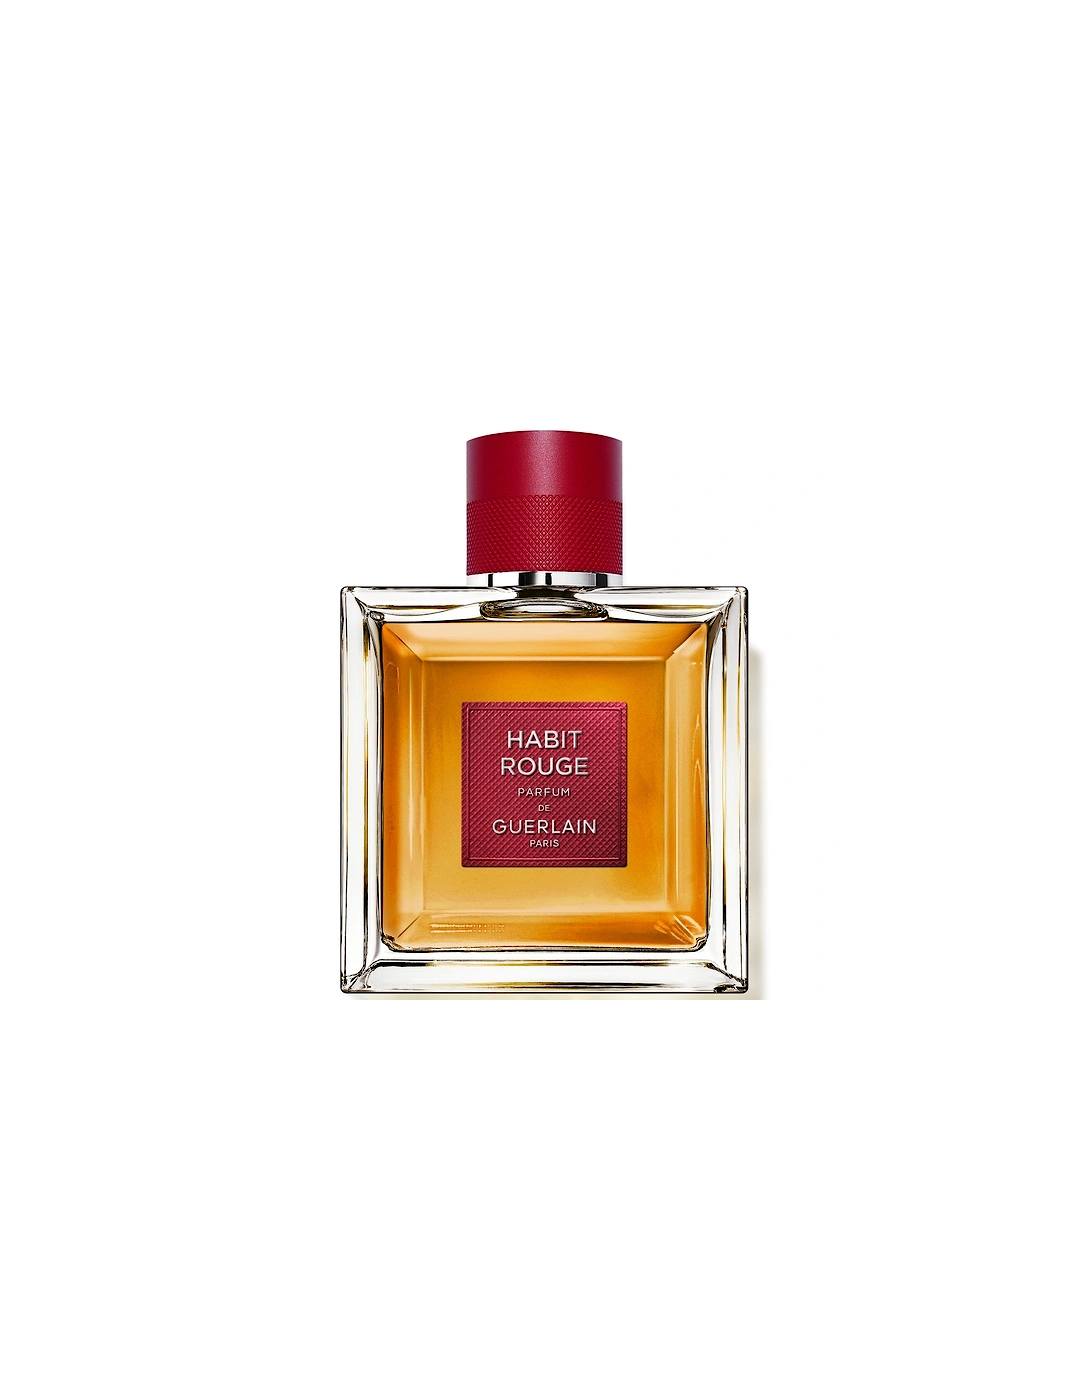 Habit Rouge Parfum 100ml, 2 of 1